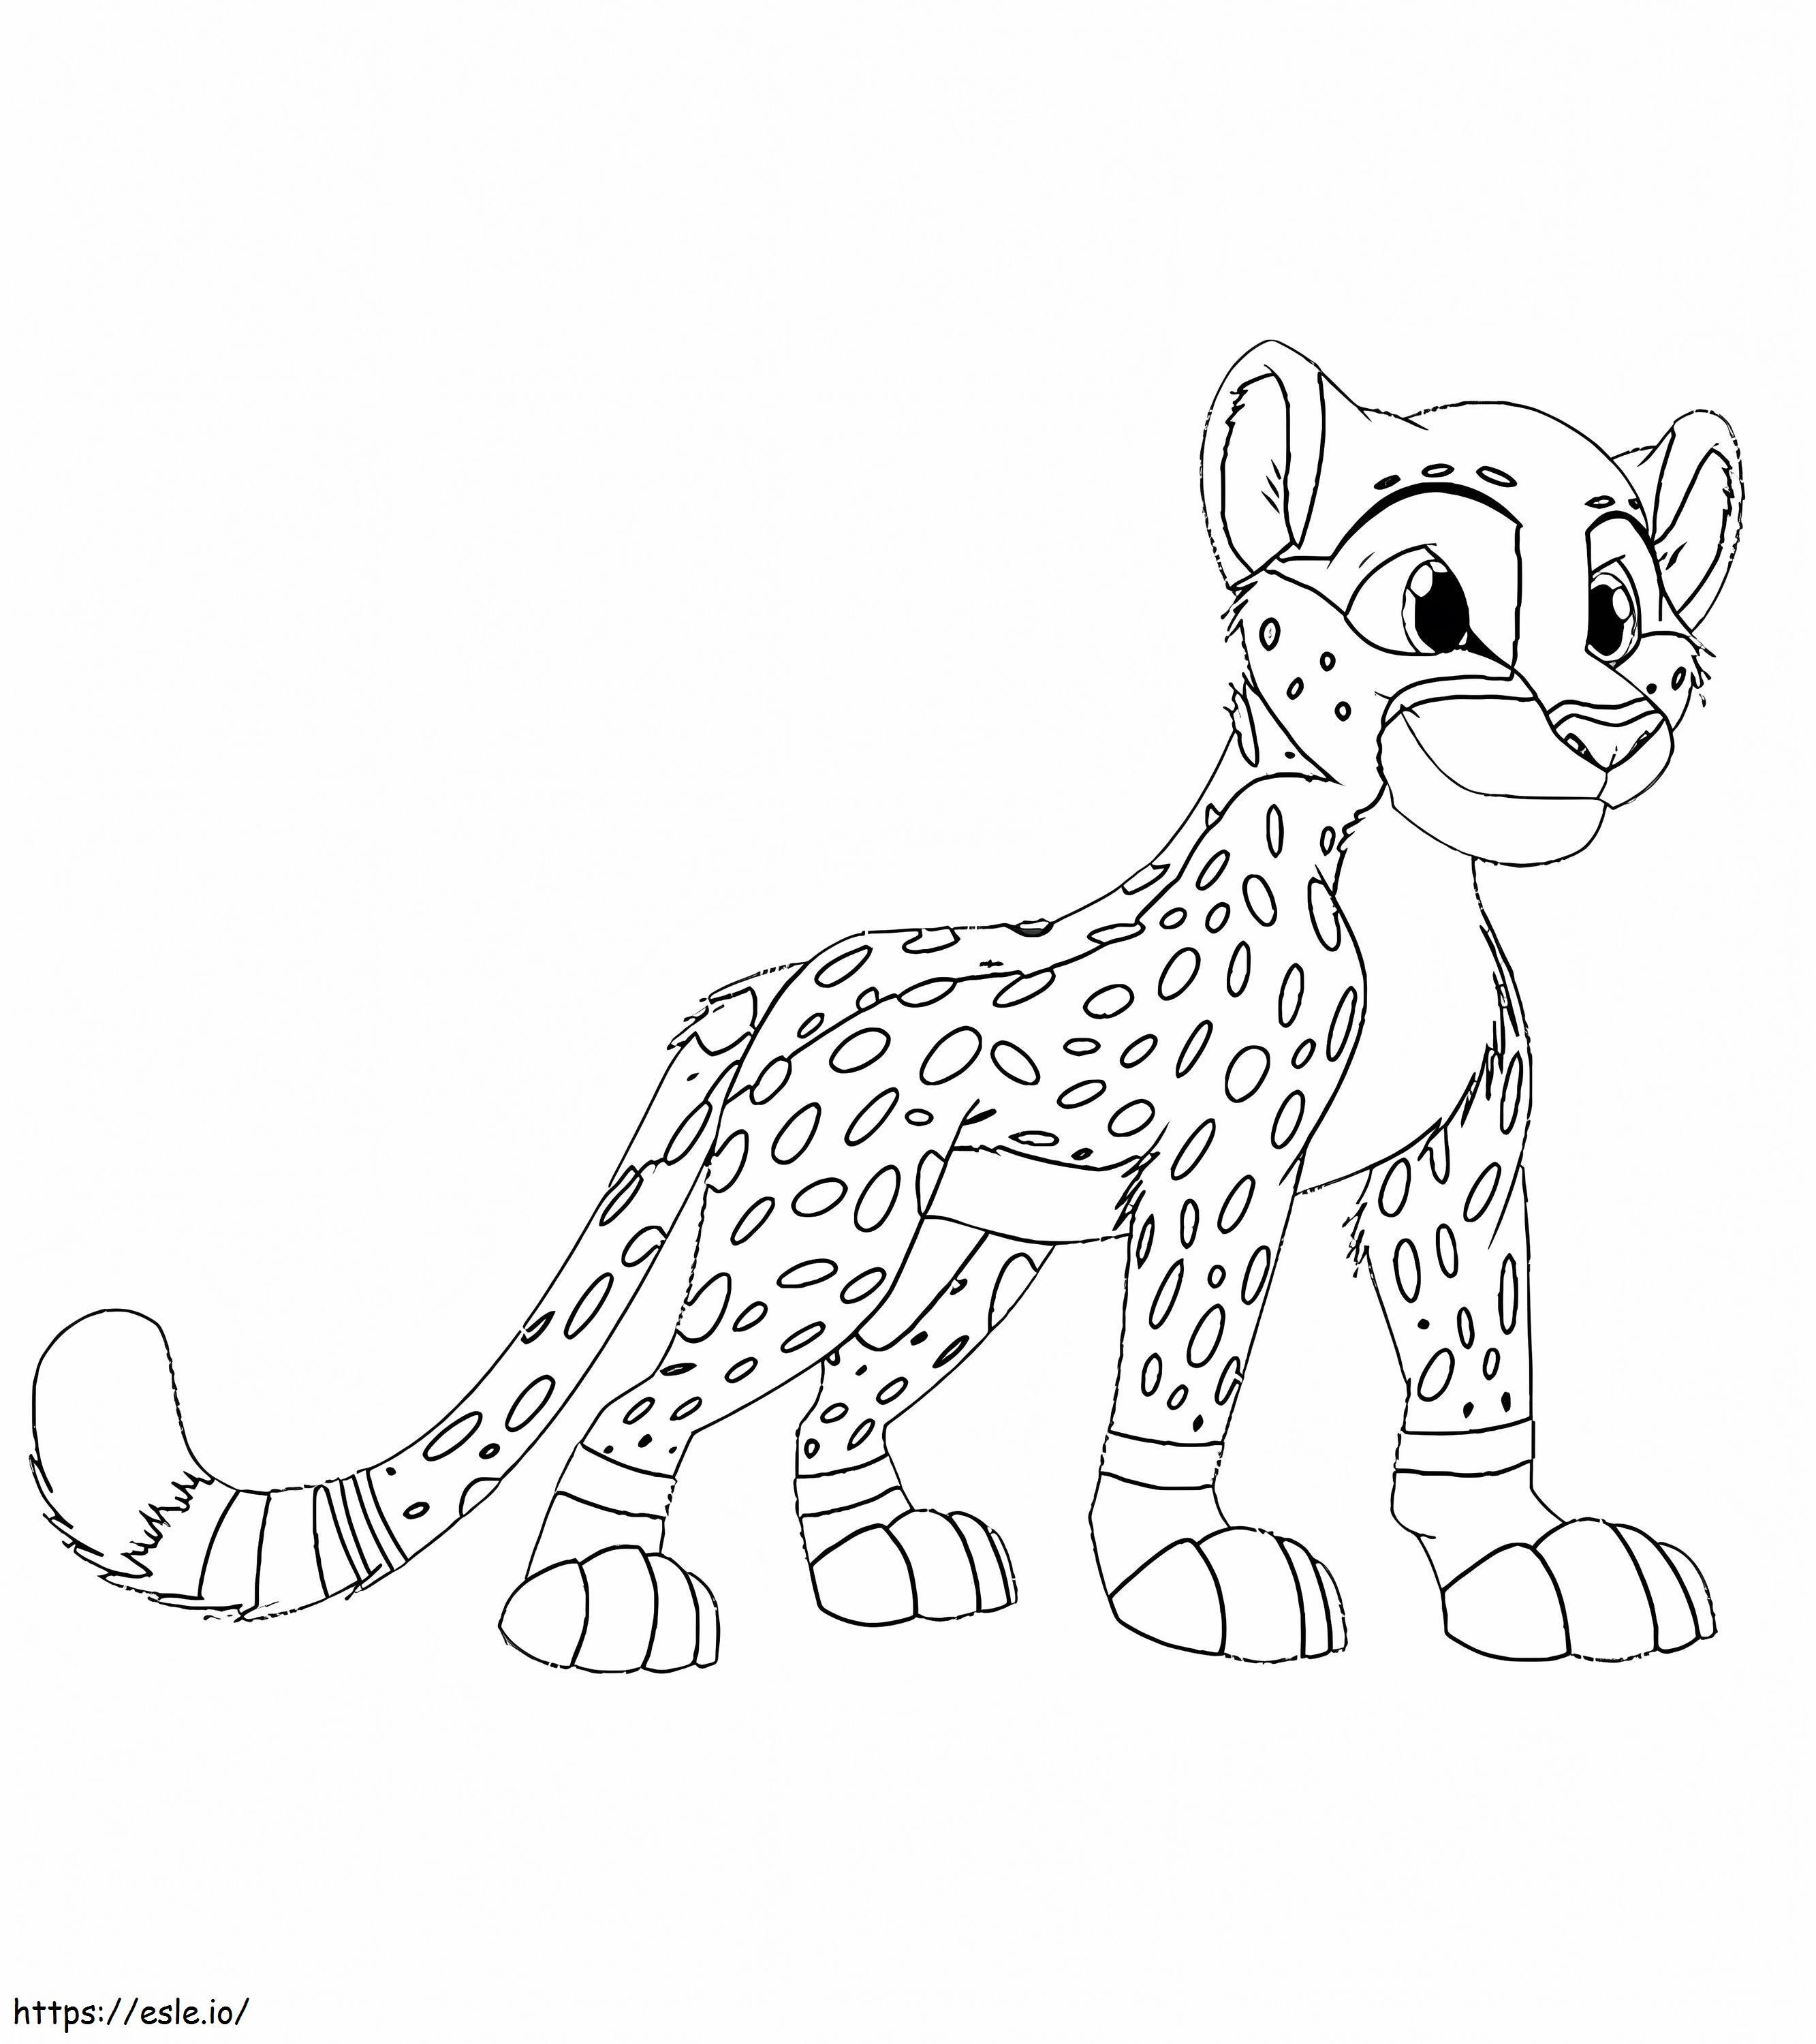 Cartoon Cheetah coloring page